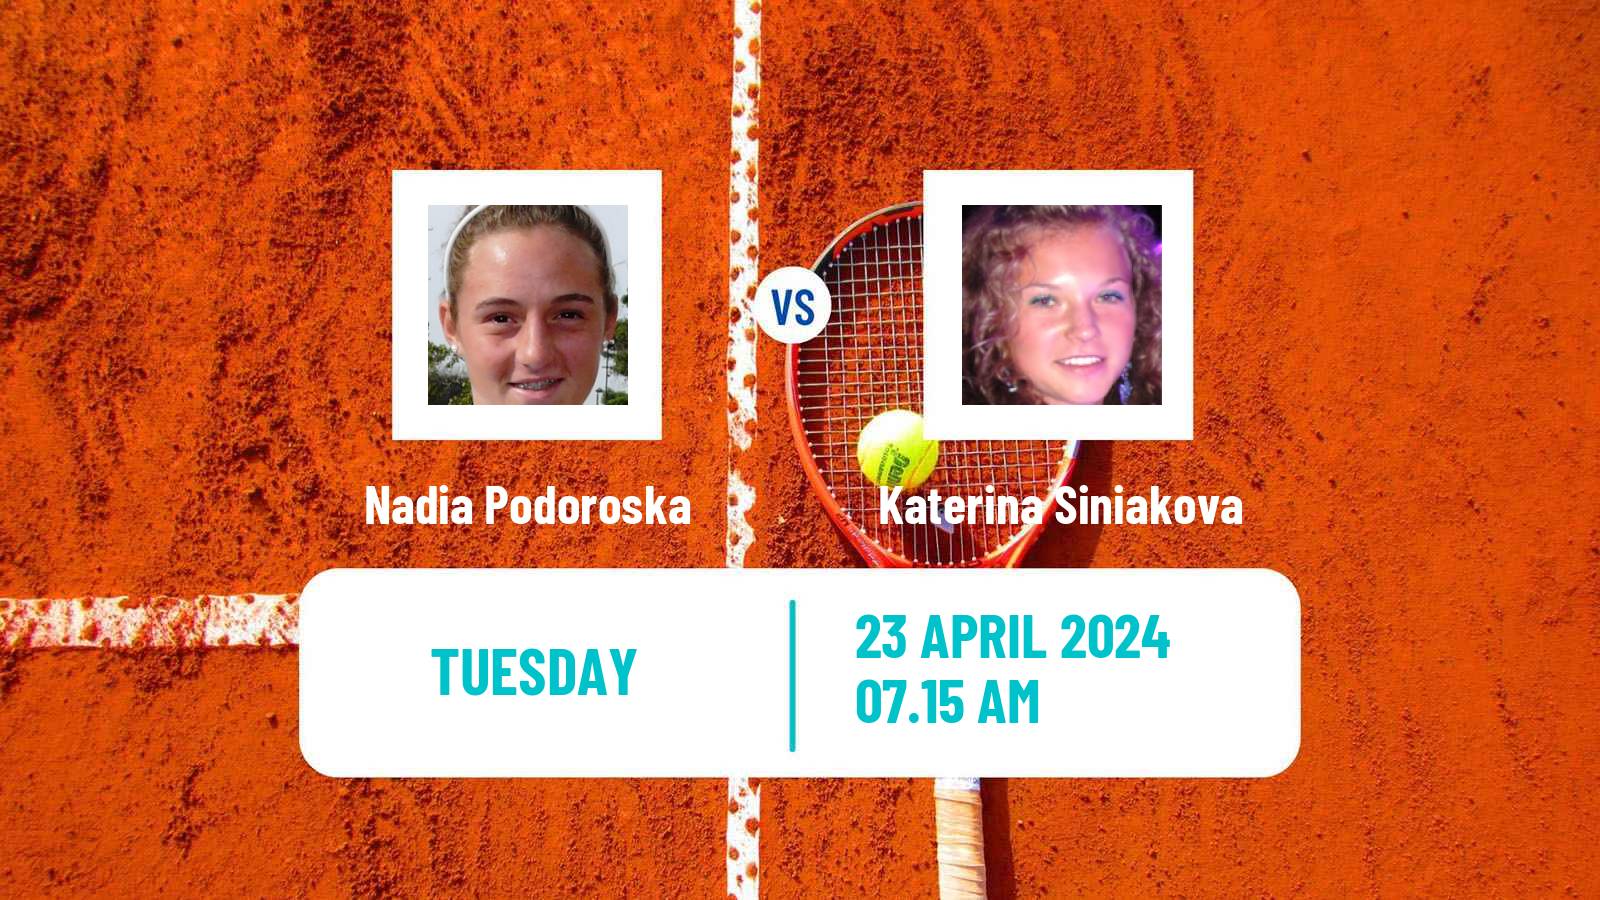 Tennis WTA Madrid Nadia Podoroska - Katerina Siniakova